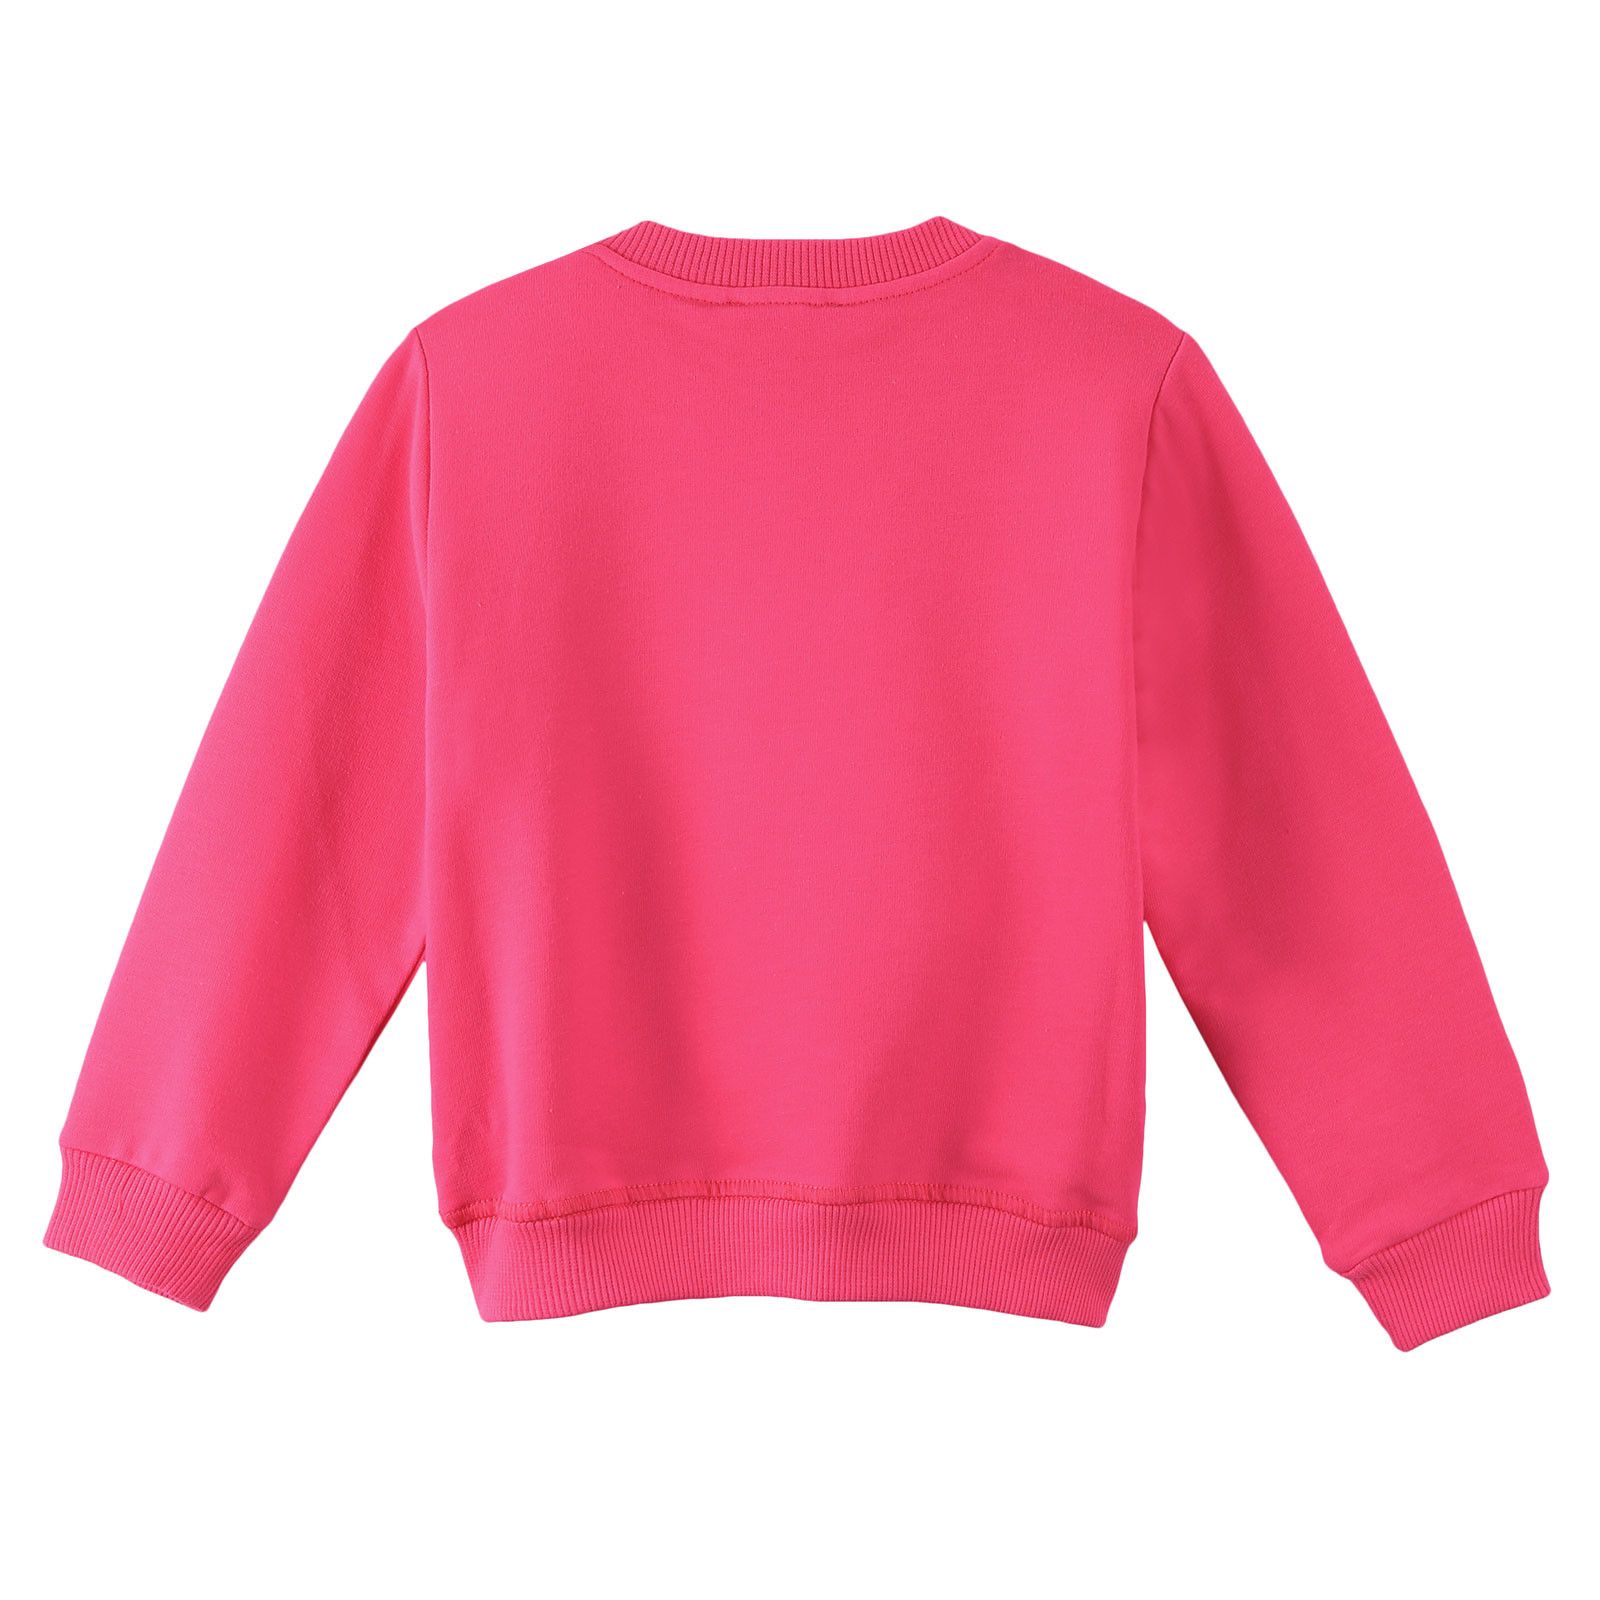 Girls Red Cotton Embroidered Tiger Head Sweatshirt - CÉMAROSE | Children's Fashion Store - 2